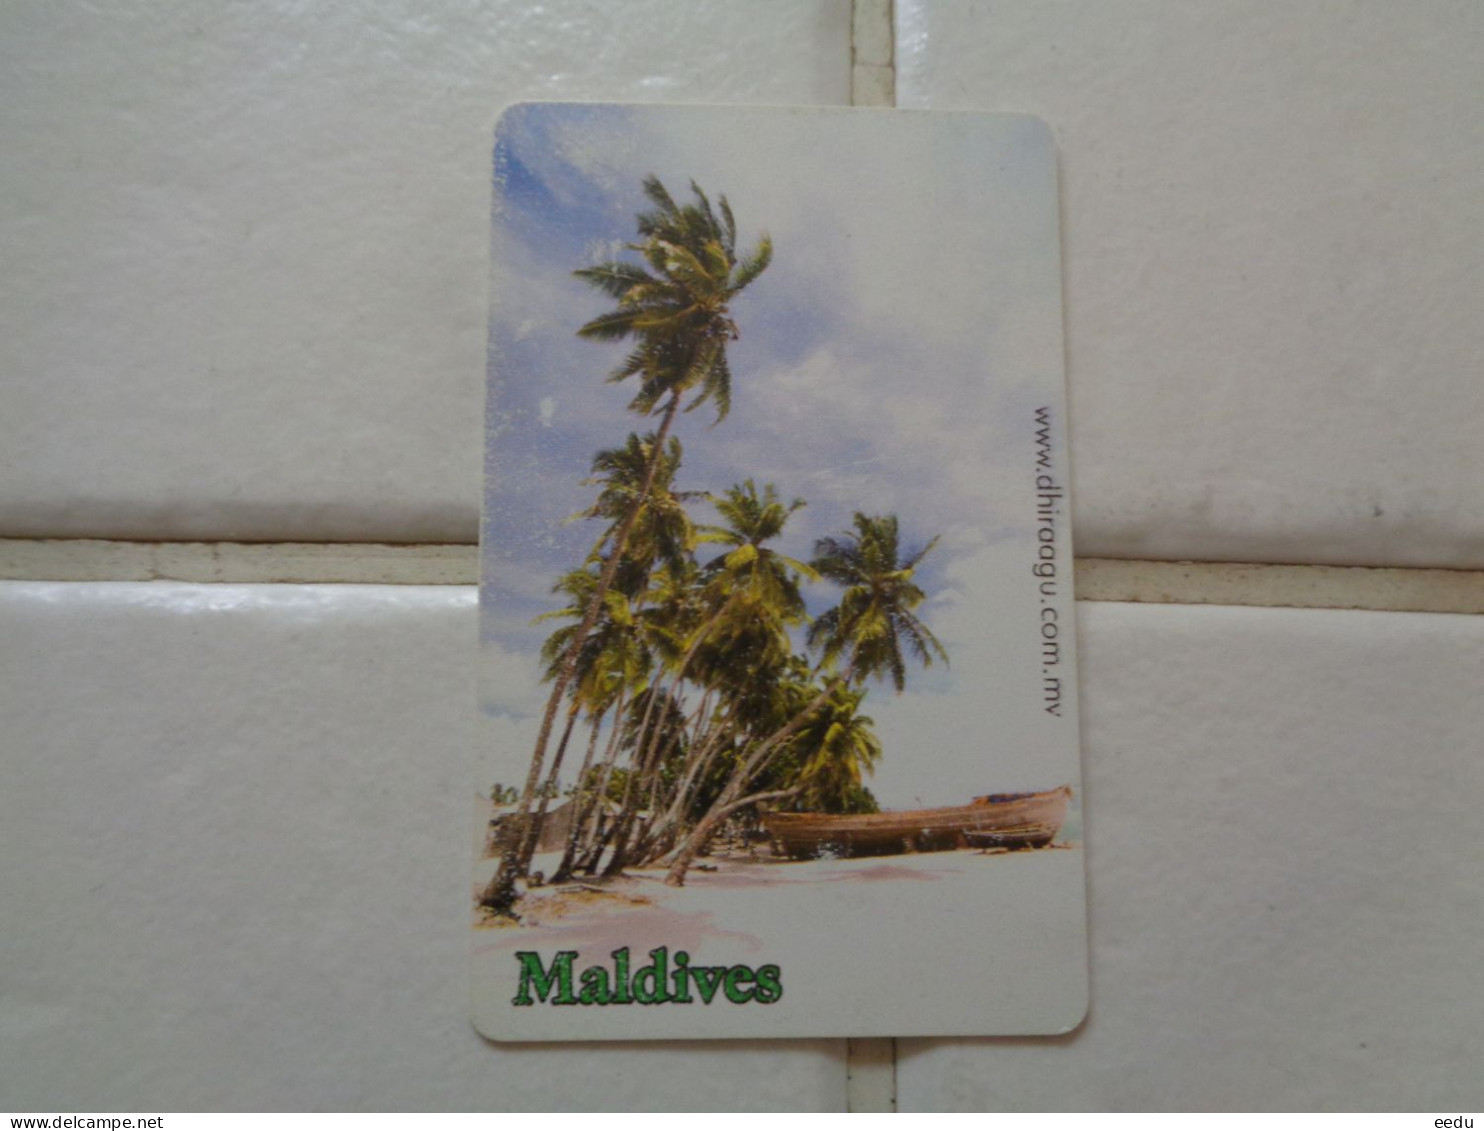 Maldives Phonecard - Maldiven